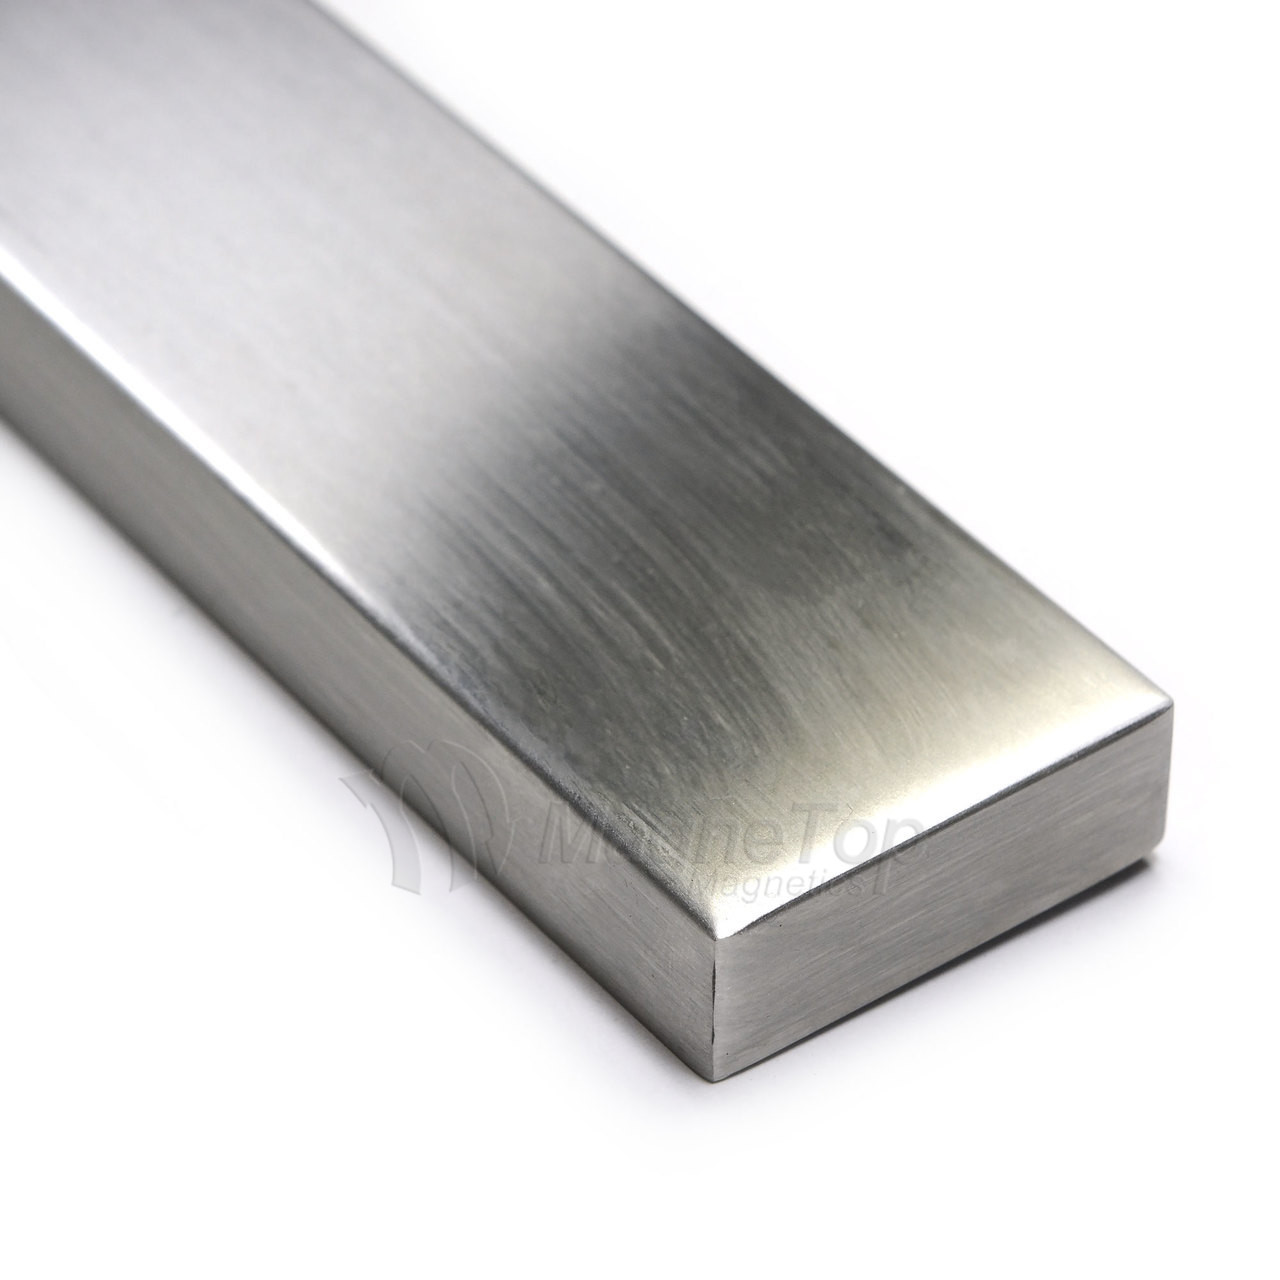 Premium 450mm Stainless Steel Magnetic Knife Holder